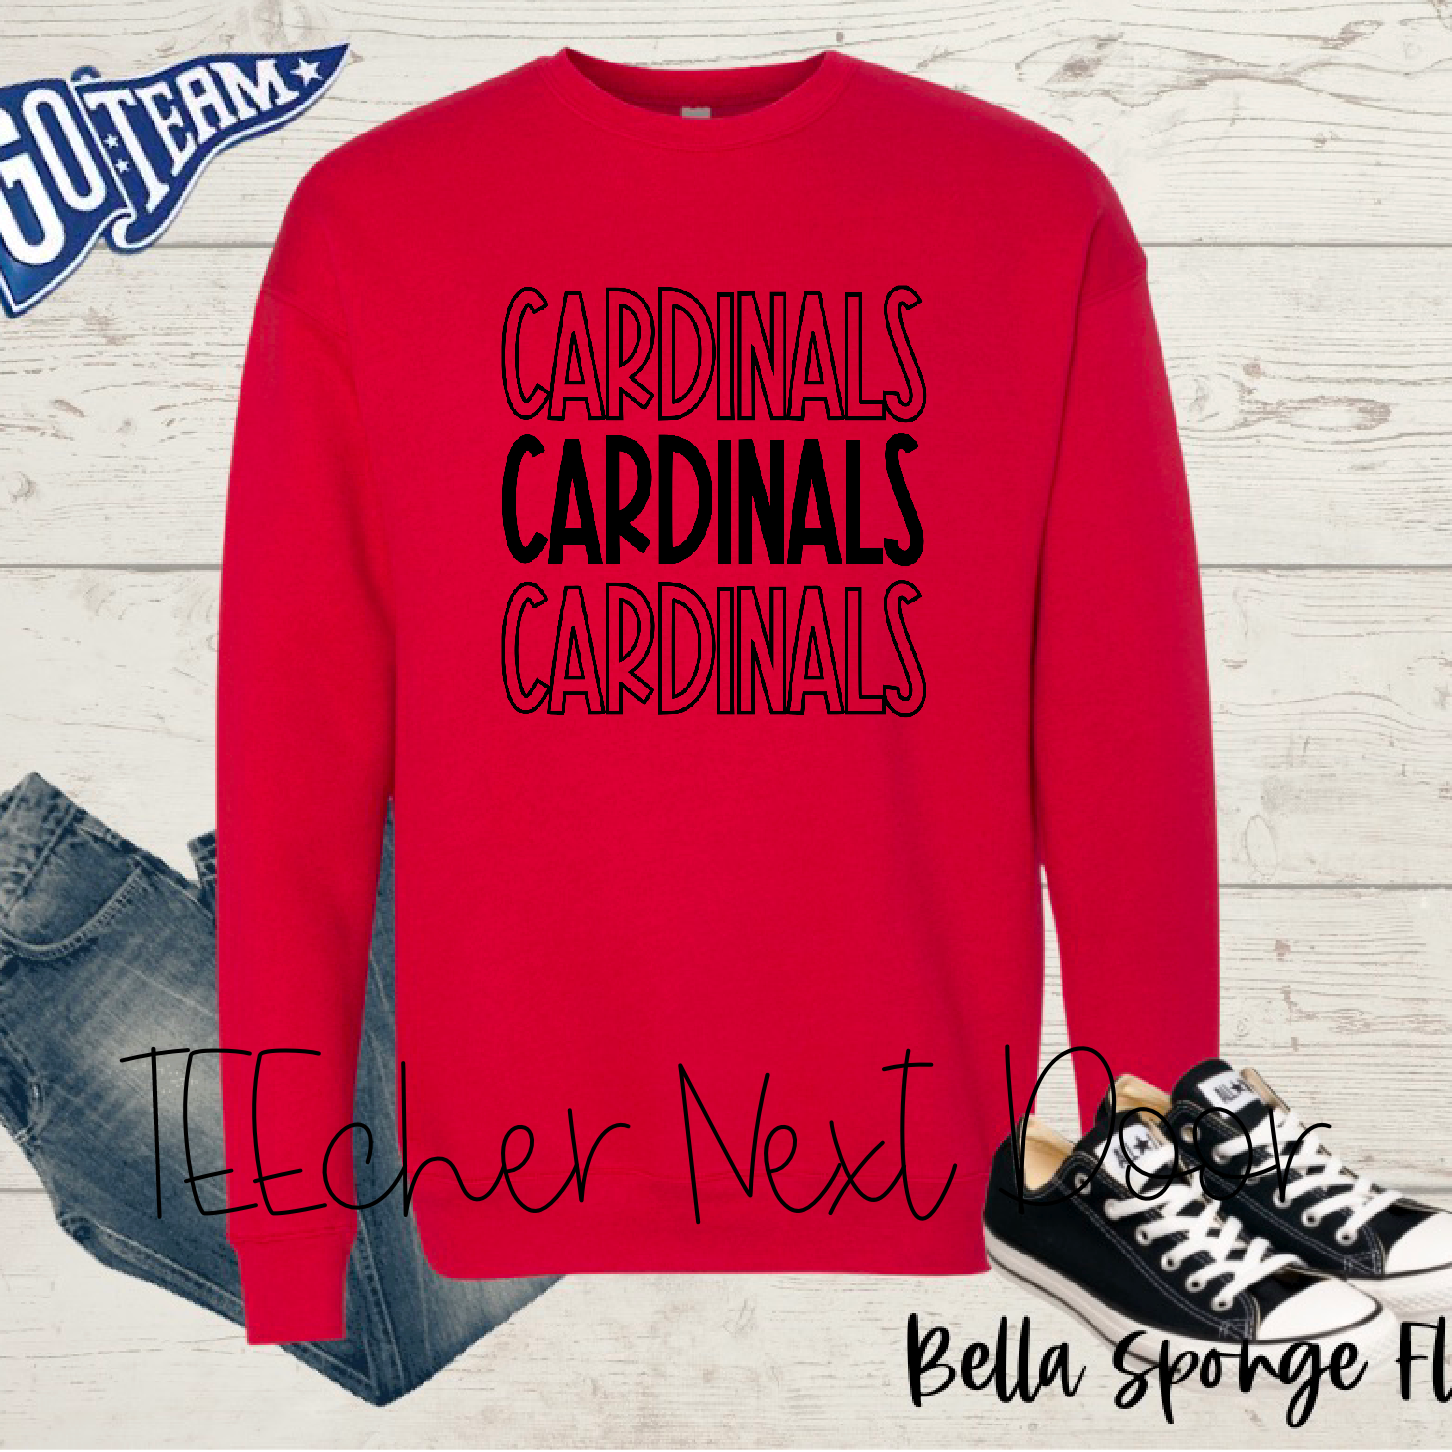 Cardinals Spirit Wear